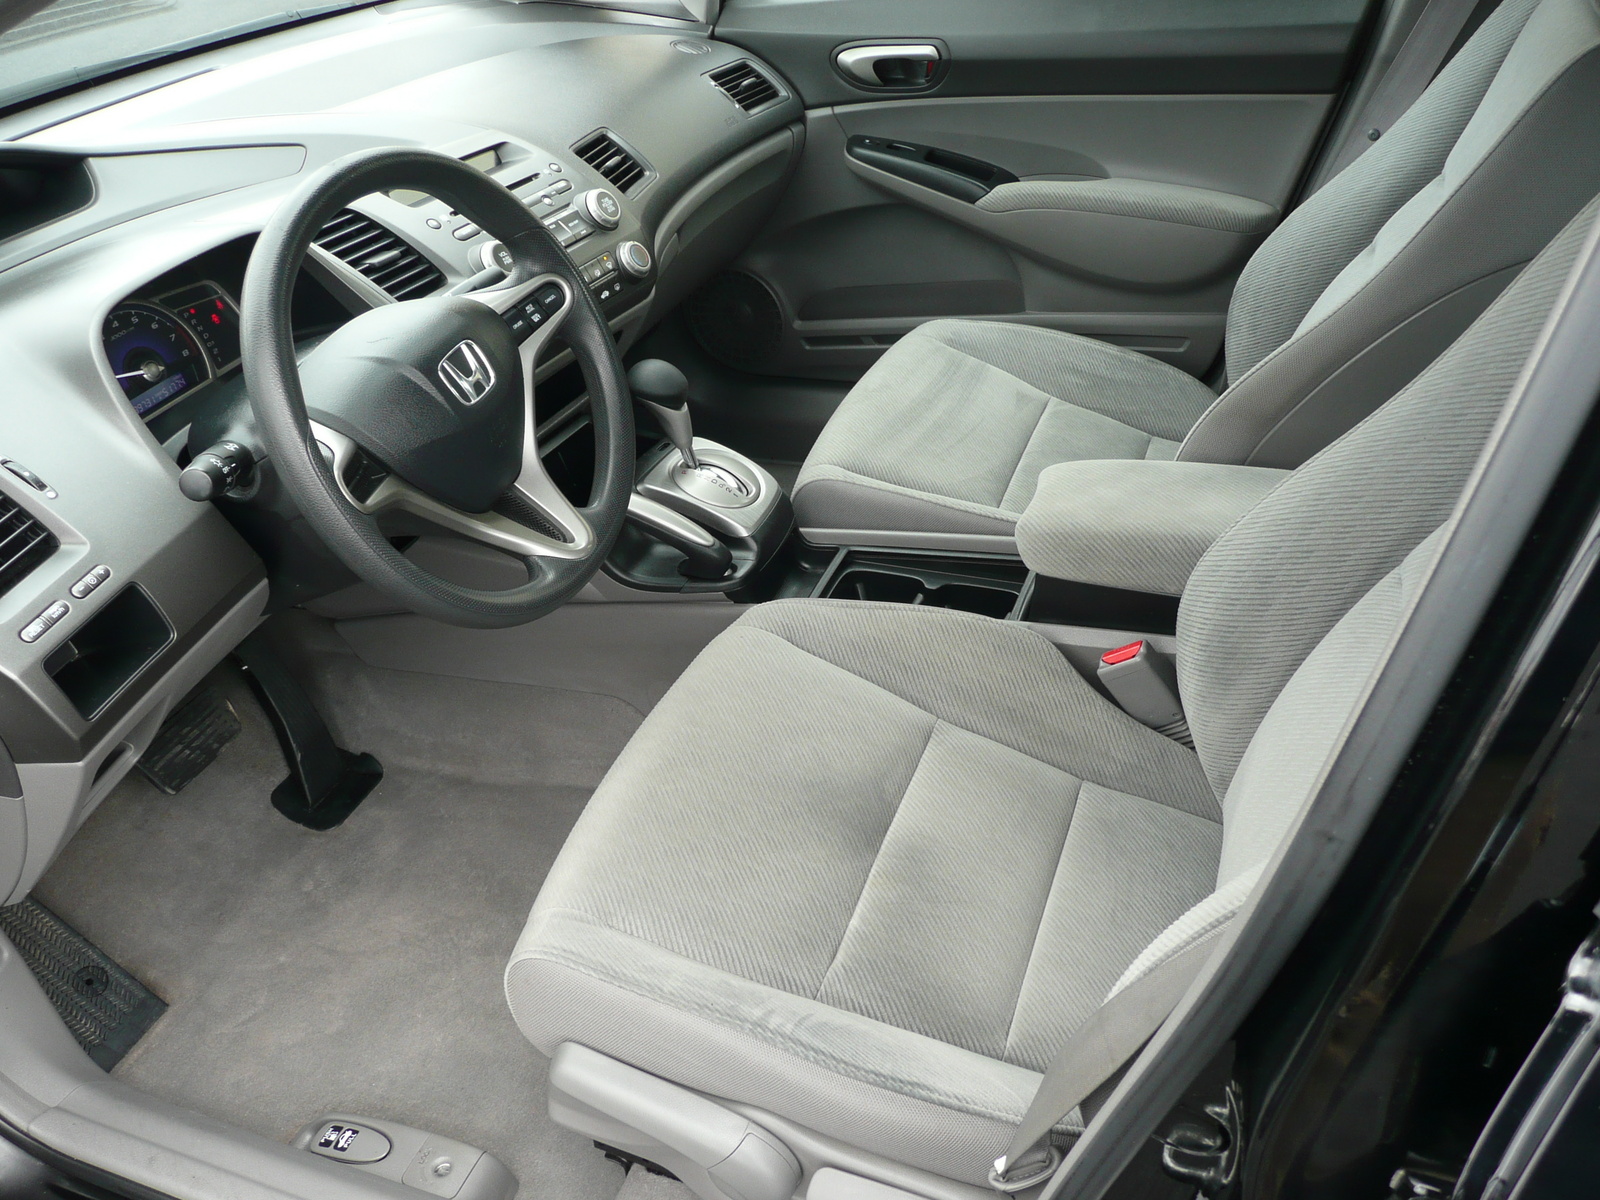 2011 Honda Civic - Review - CarGurus